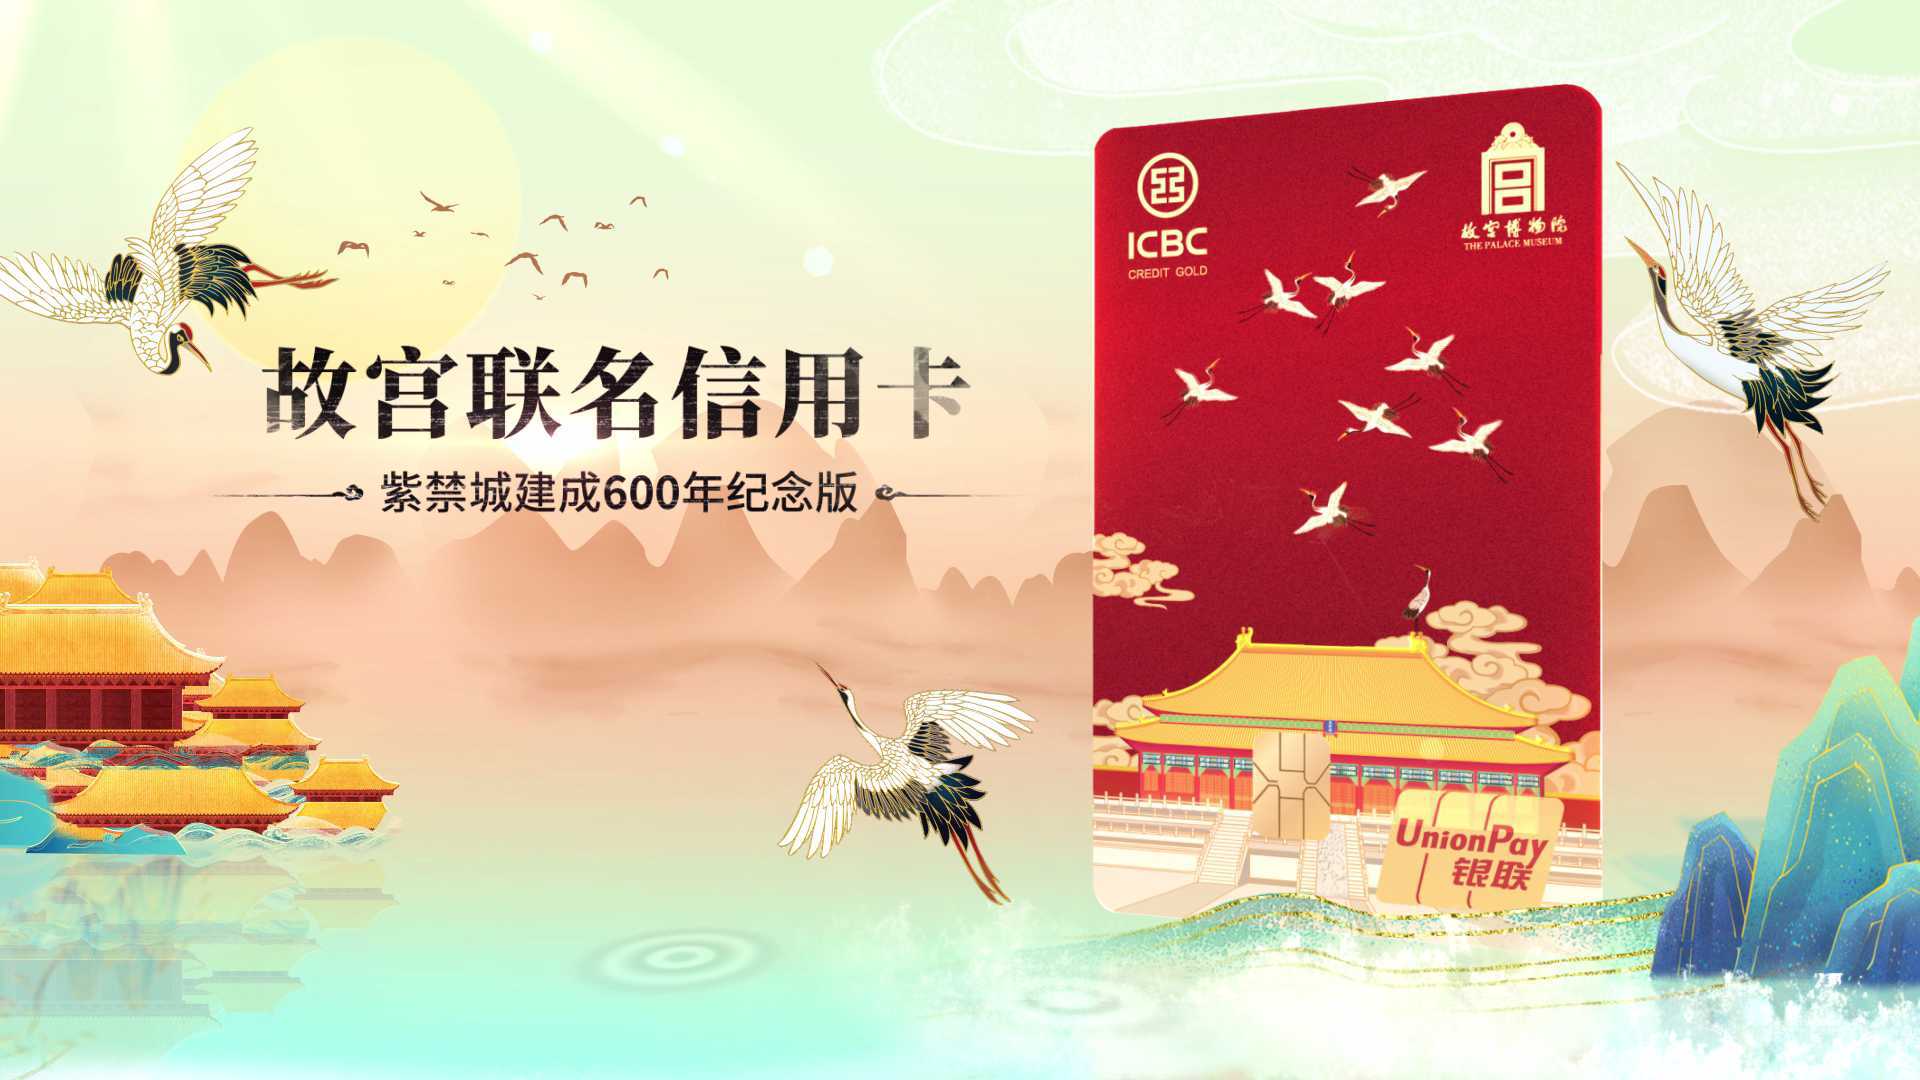 中国工商银行故宫联名信用卡宣传片